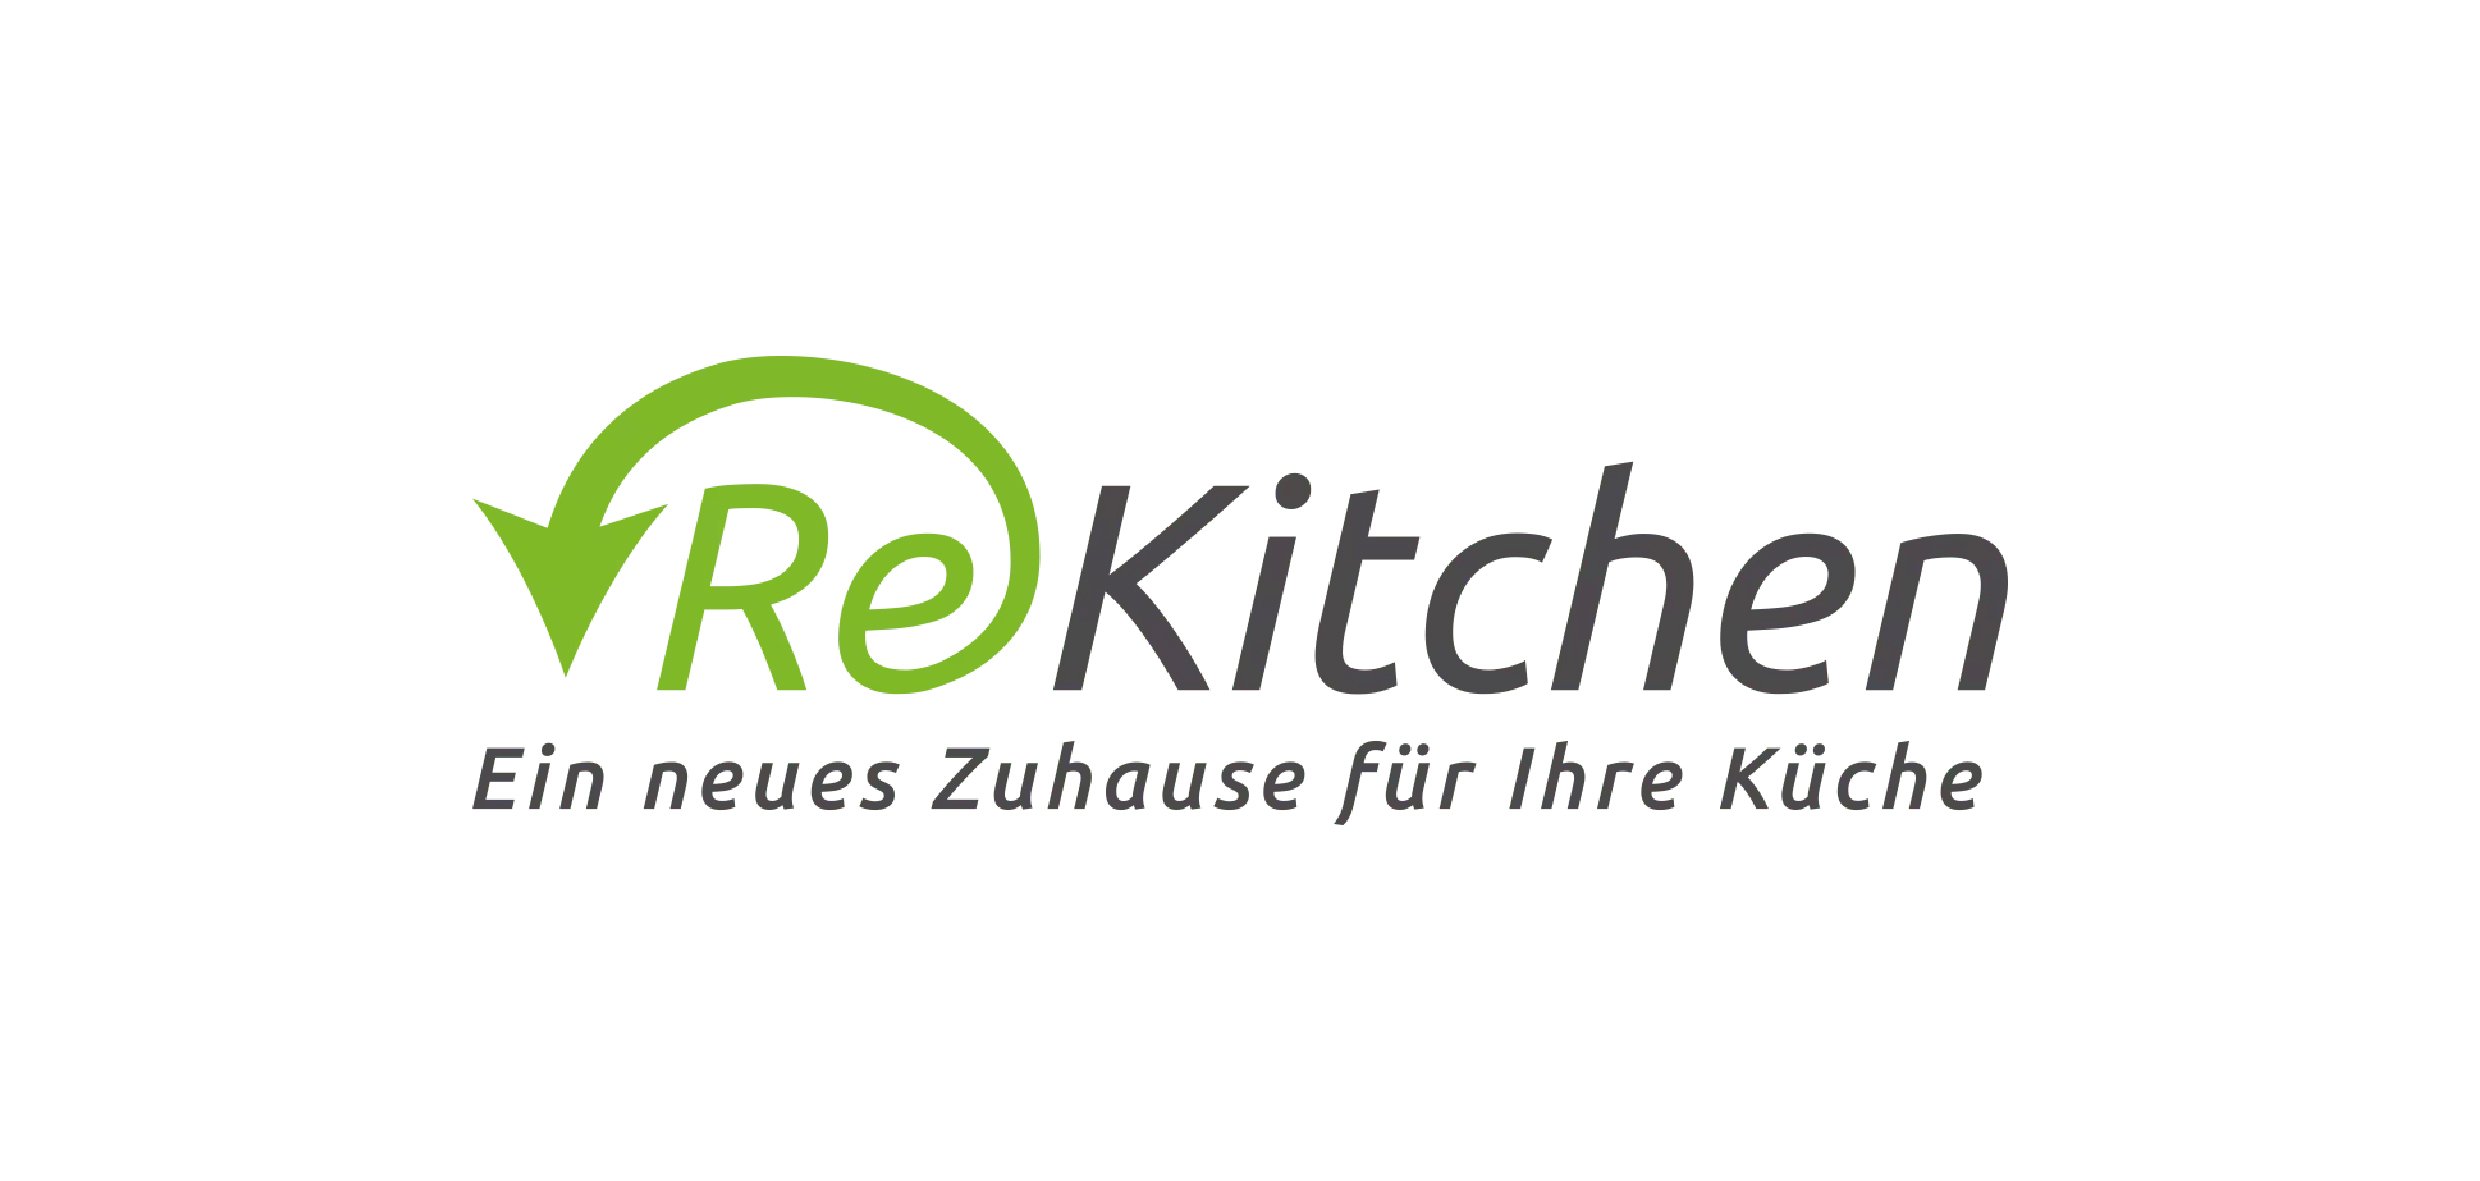 ReKitchen - Webdesign